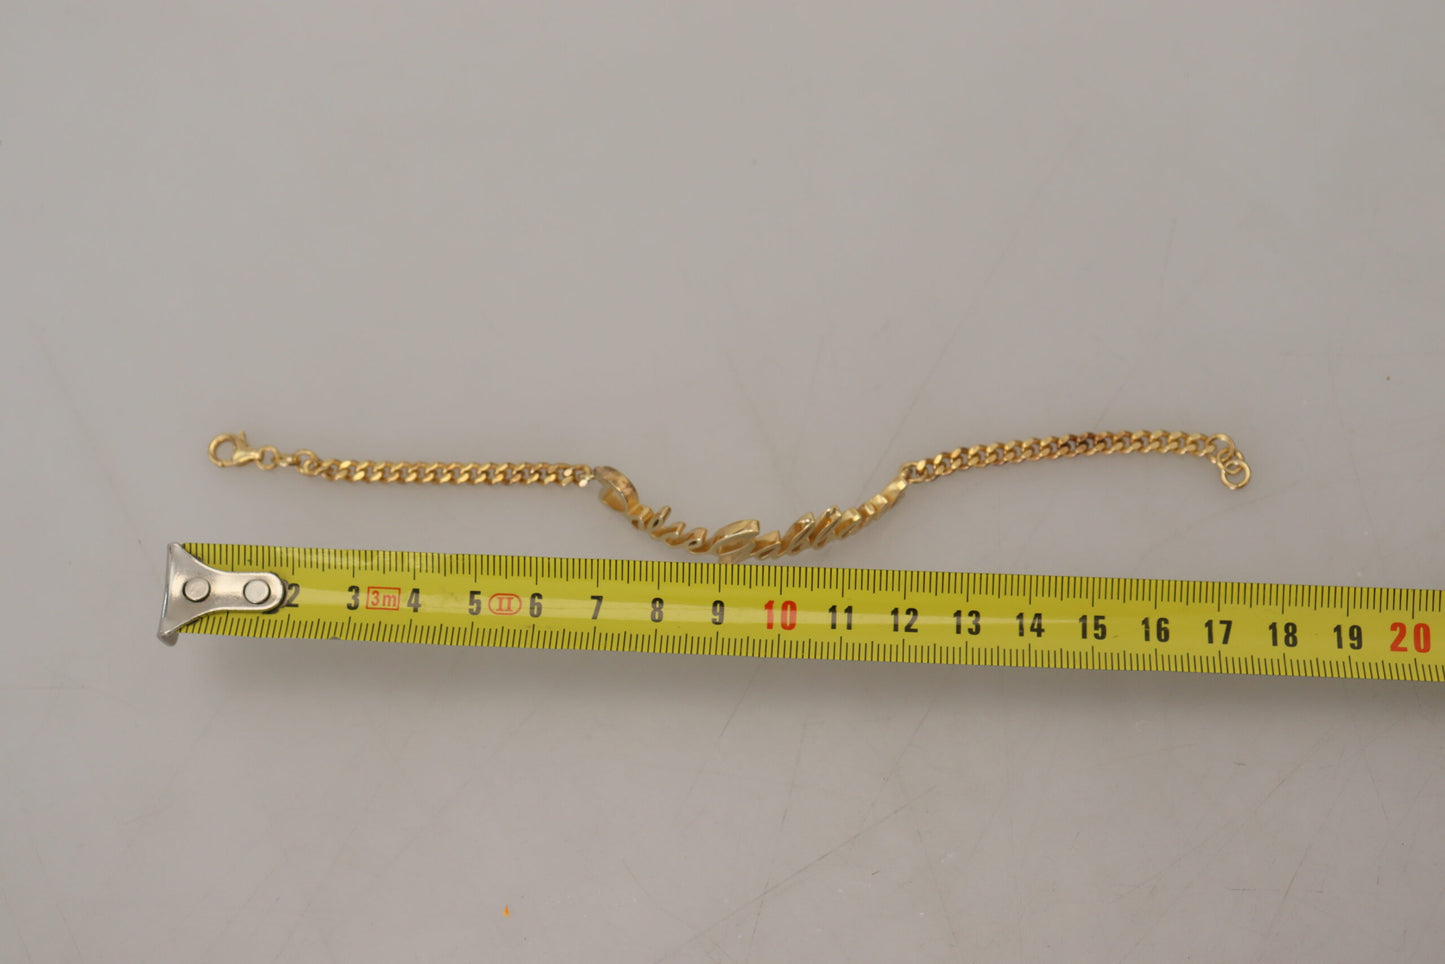 Elegant Gold-Toned Sterling Bracelet